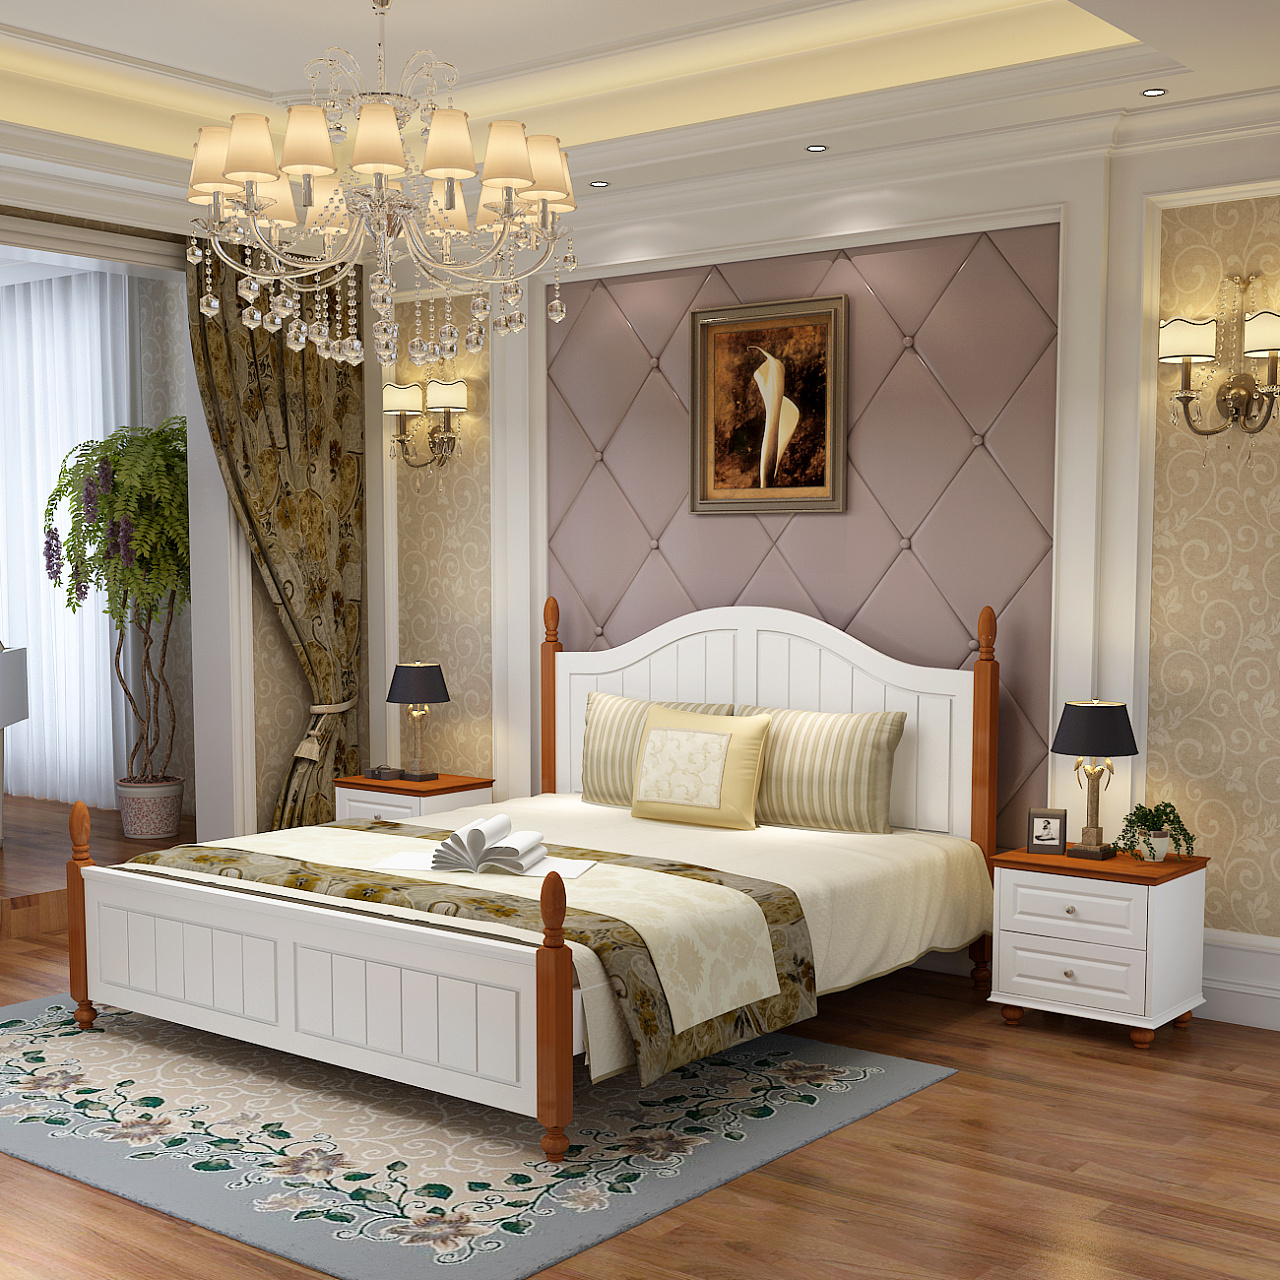 五星级宾馆酒店床上用品 80支纯棉贡缎刺绣白简约被套床单四件套-阿里巴巴